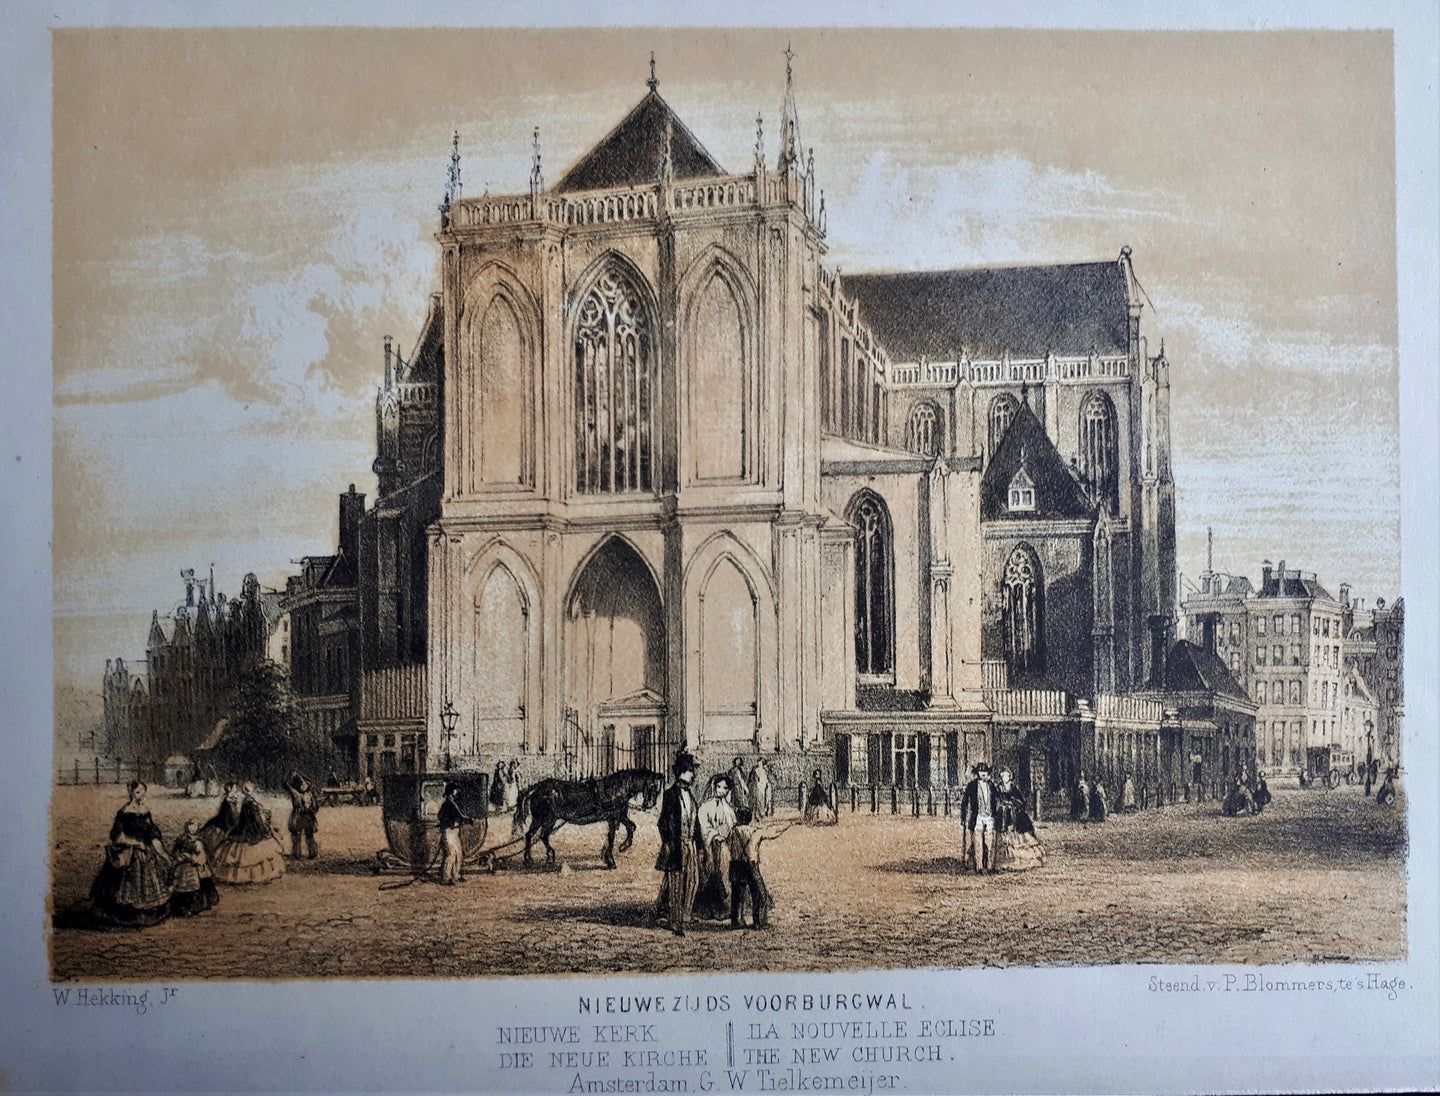 AMSTERDAM Nieuwe Zijds Voorburgwal Nieuwe Kerk - W Hekking jr/ GW Tielkemeijer - 1861